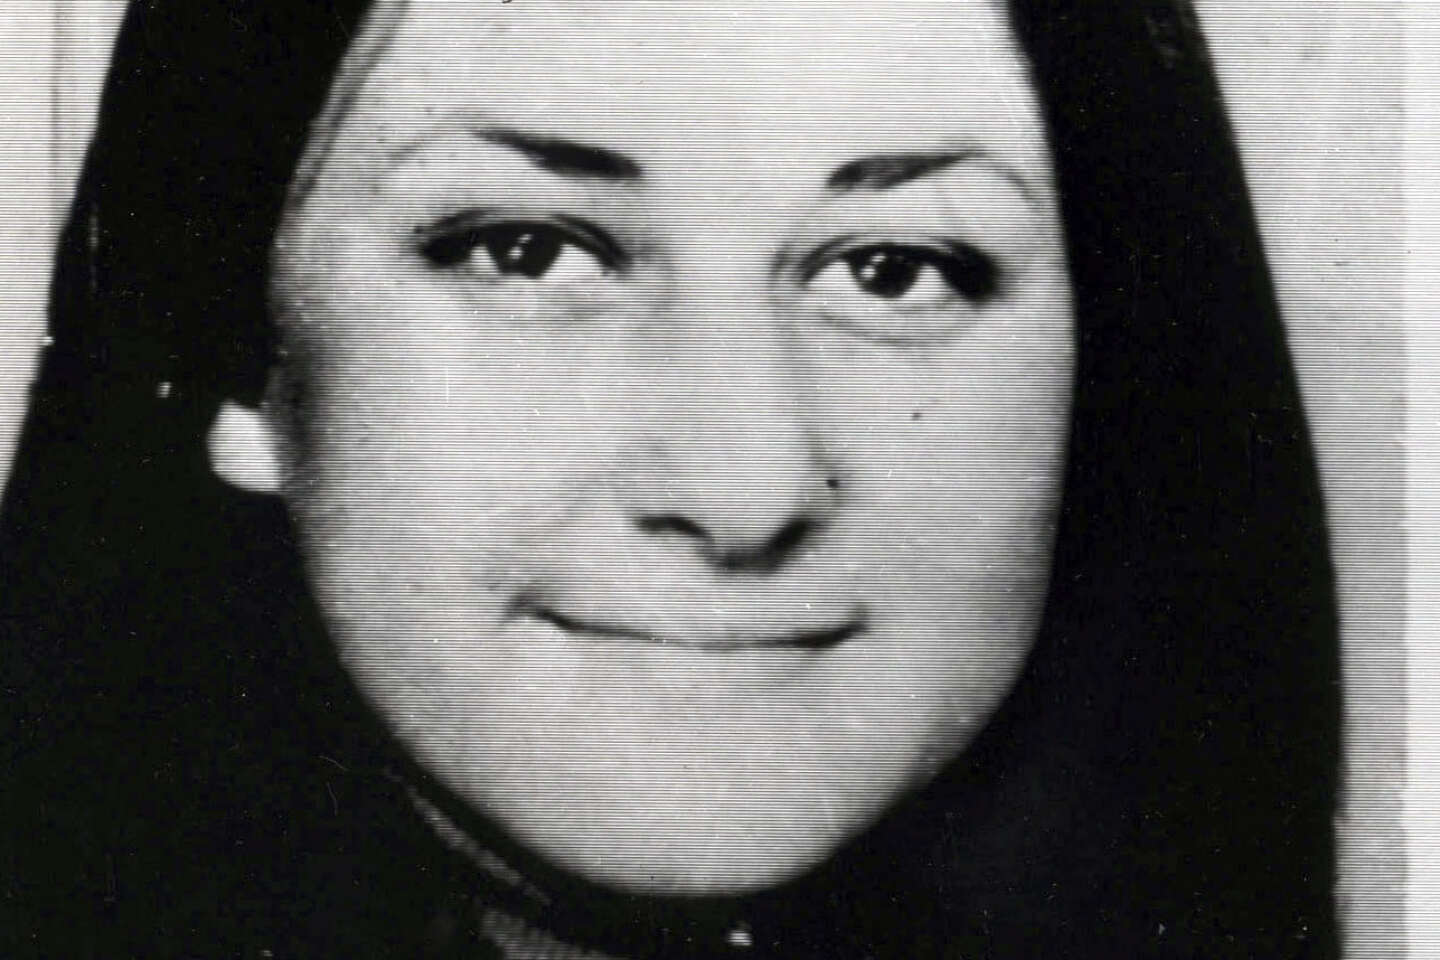 In Italia, les derniers secrets de l’affaire Cristina Mazzotti, rapita e uccisa dalla mafia calabrese nel 1975